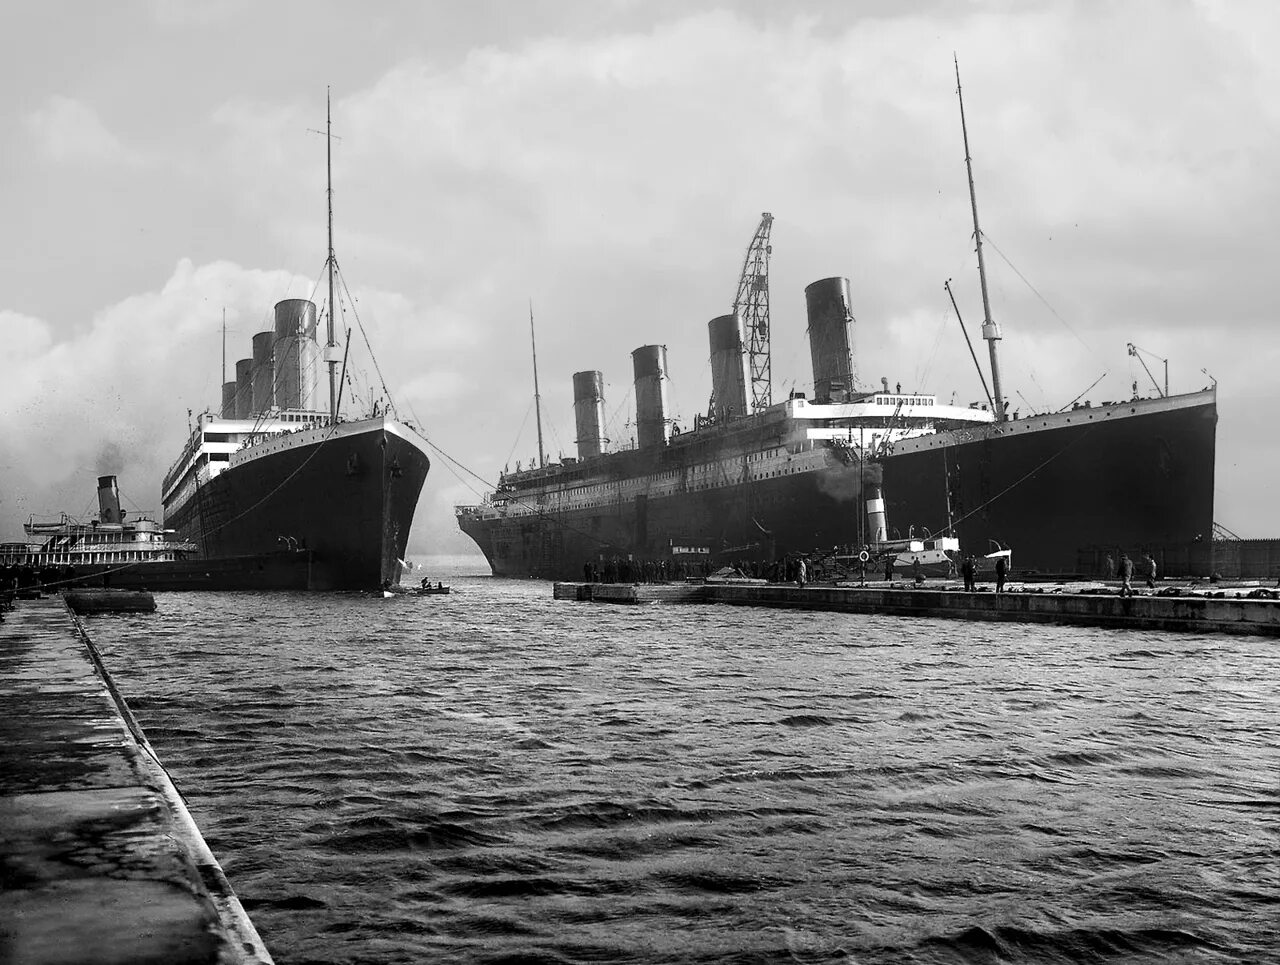 Олимпик 1912. Олимпик Титаник Британик. Титаник Британик Олимпик Лузитания Мавритания. Корабль Олимпик и Титаник.